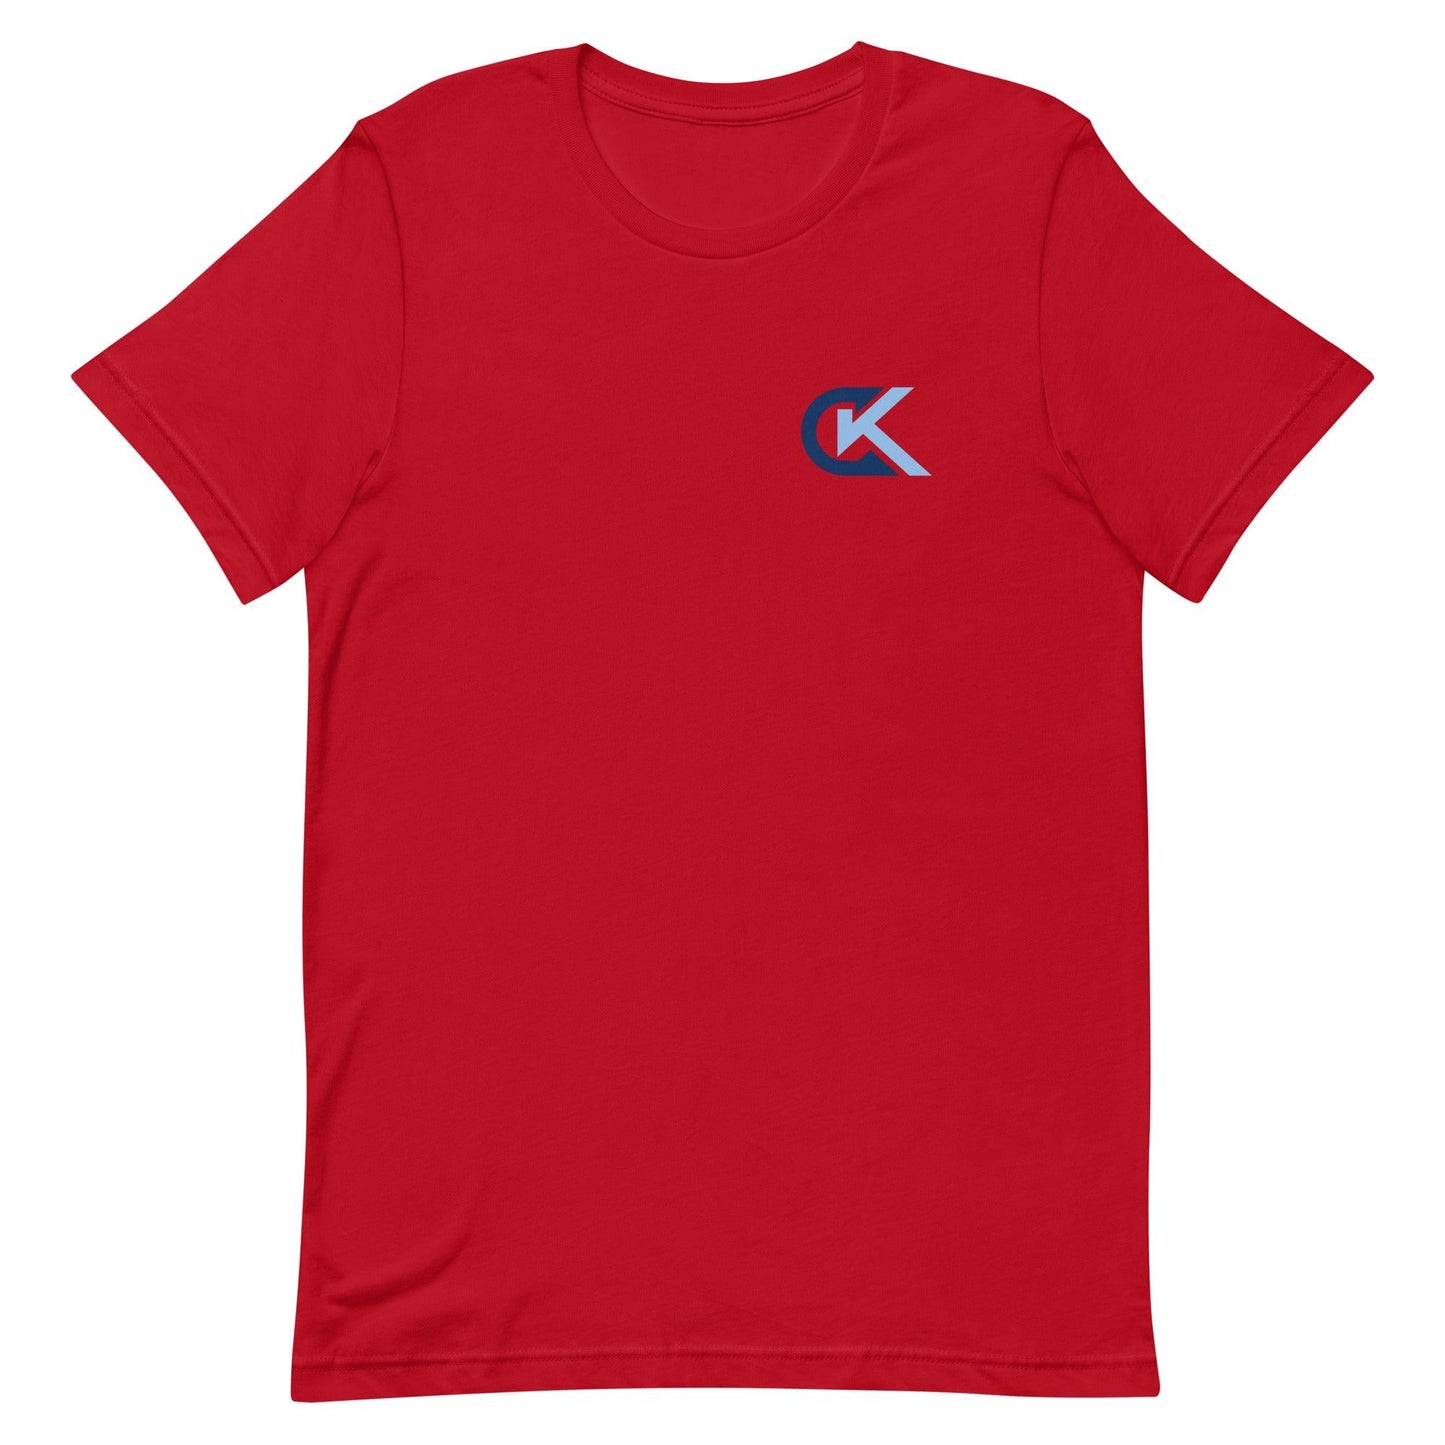 Corey Kluber "Elite" t-shirt - Fan Arch